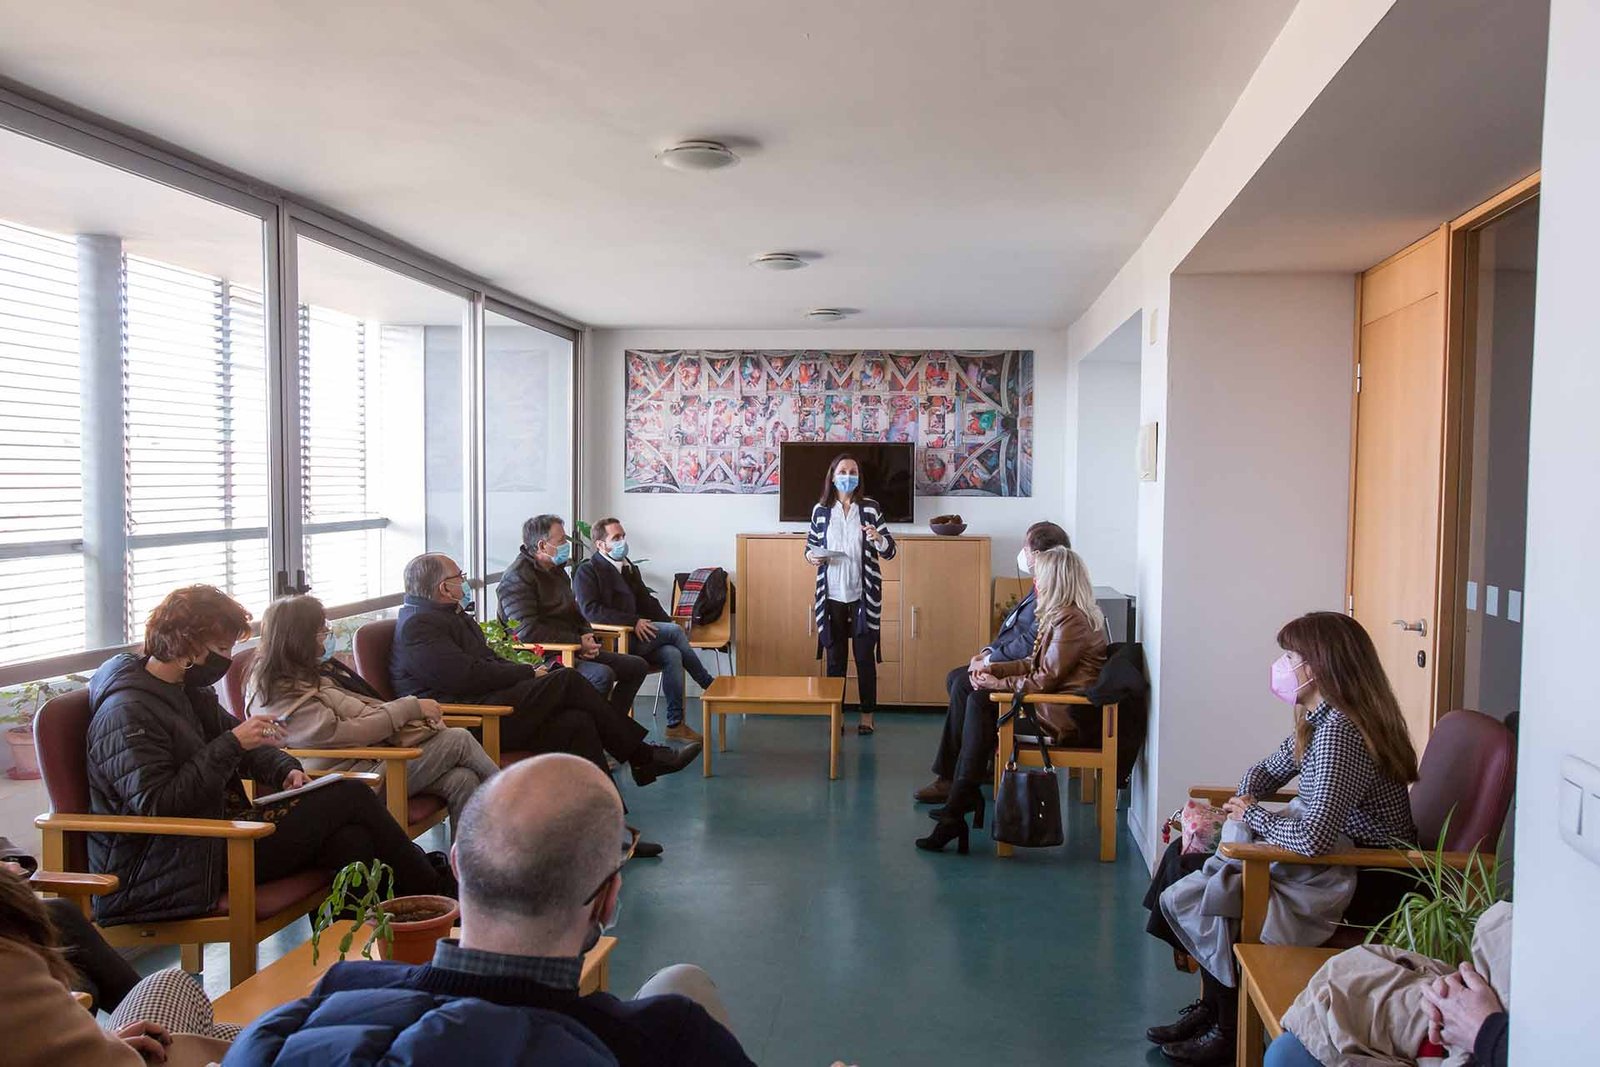 151 personas mayores de 65 años y con problemas de vivienda residen actualmente en apartamentos del Ayuntamiento de Pamplona